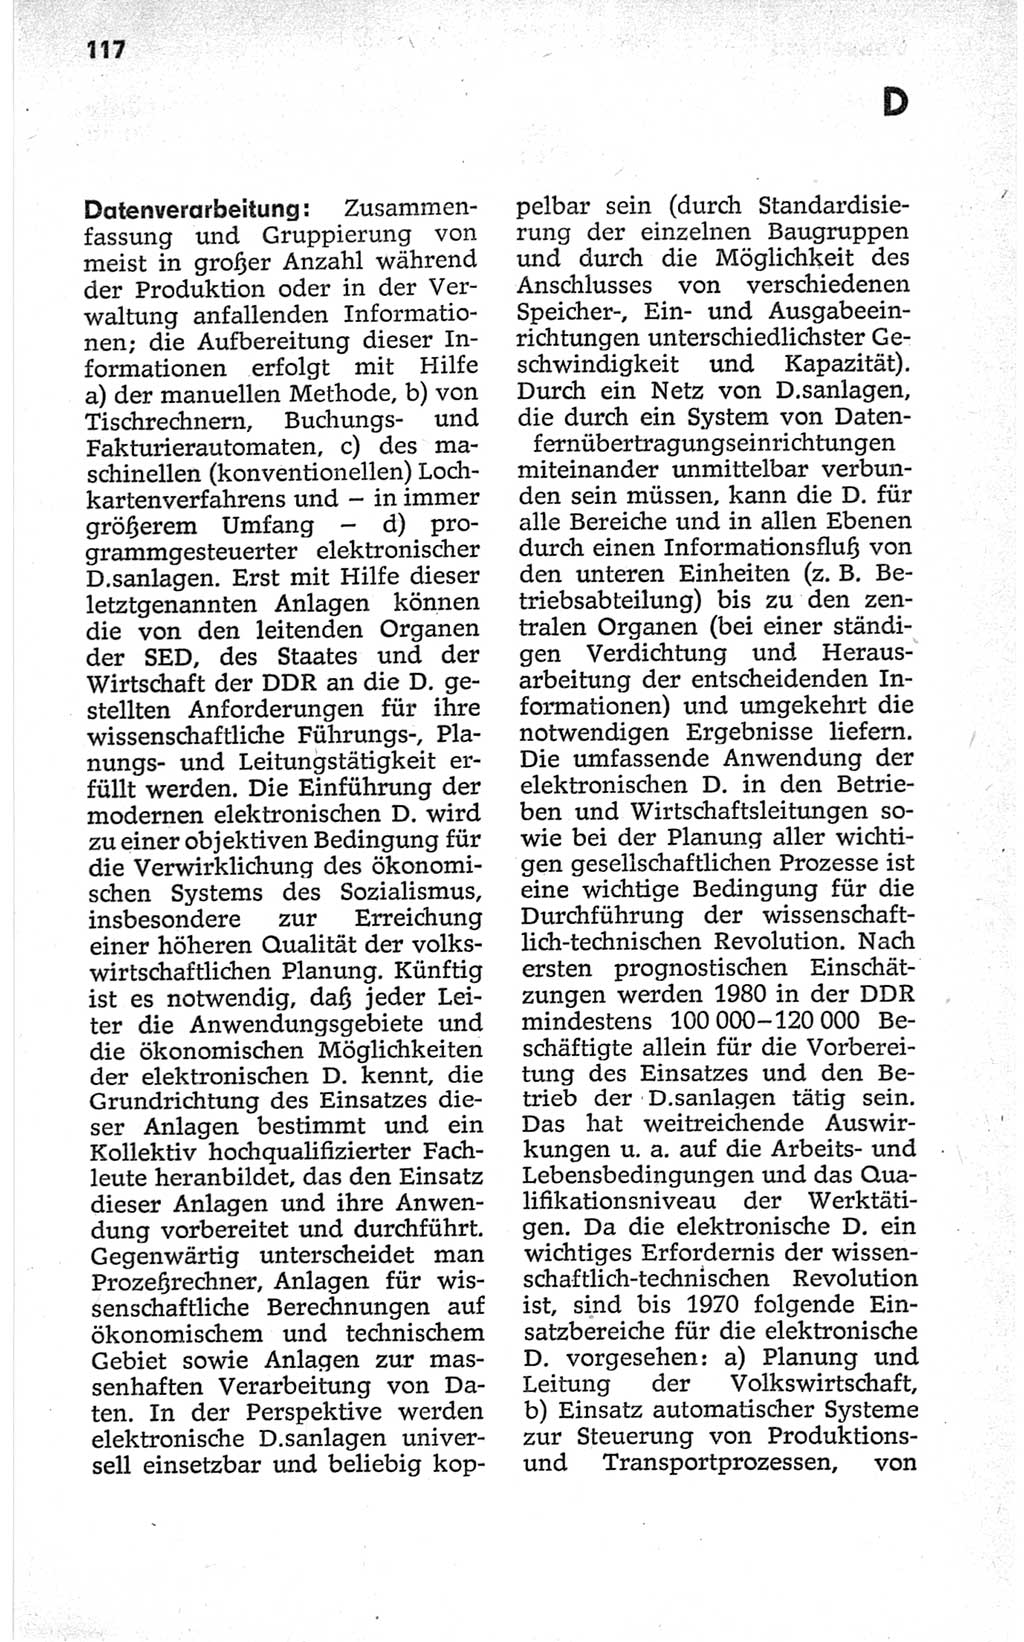 Kleines politisches Wörterbuch [Deutsche Demokratische Republik (DDR)] 1967, Seite 117 (Kl. pol. Wb. DDR 1967, S. 117)